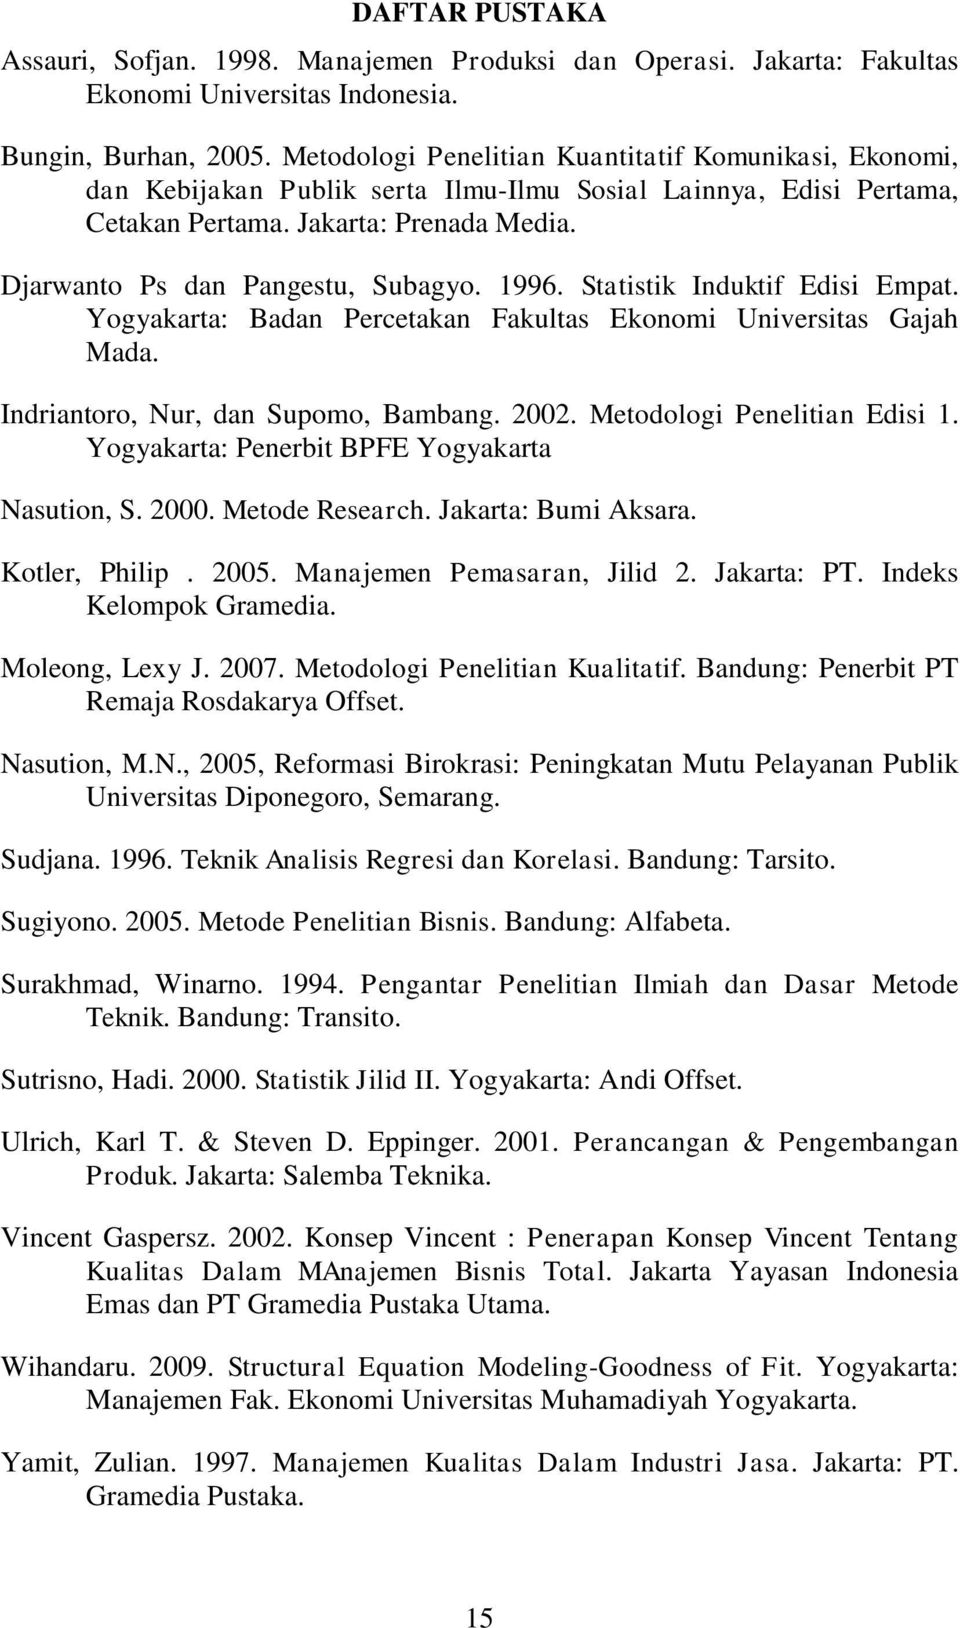 1996. Statistik Induktif Edisi Empat. Yogyakarta: Badan Percetakan Fakultas Ekonomi Universitas Gajah Mada. Indriantoro, Nur, dan Supomo, Bambang. 2002. Metodologi Penelitian Edisi 1.